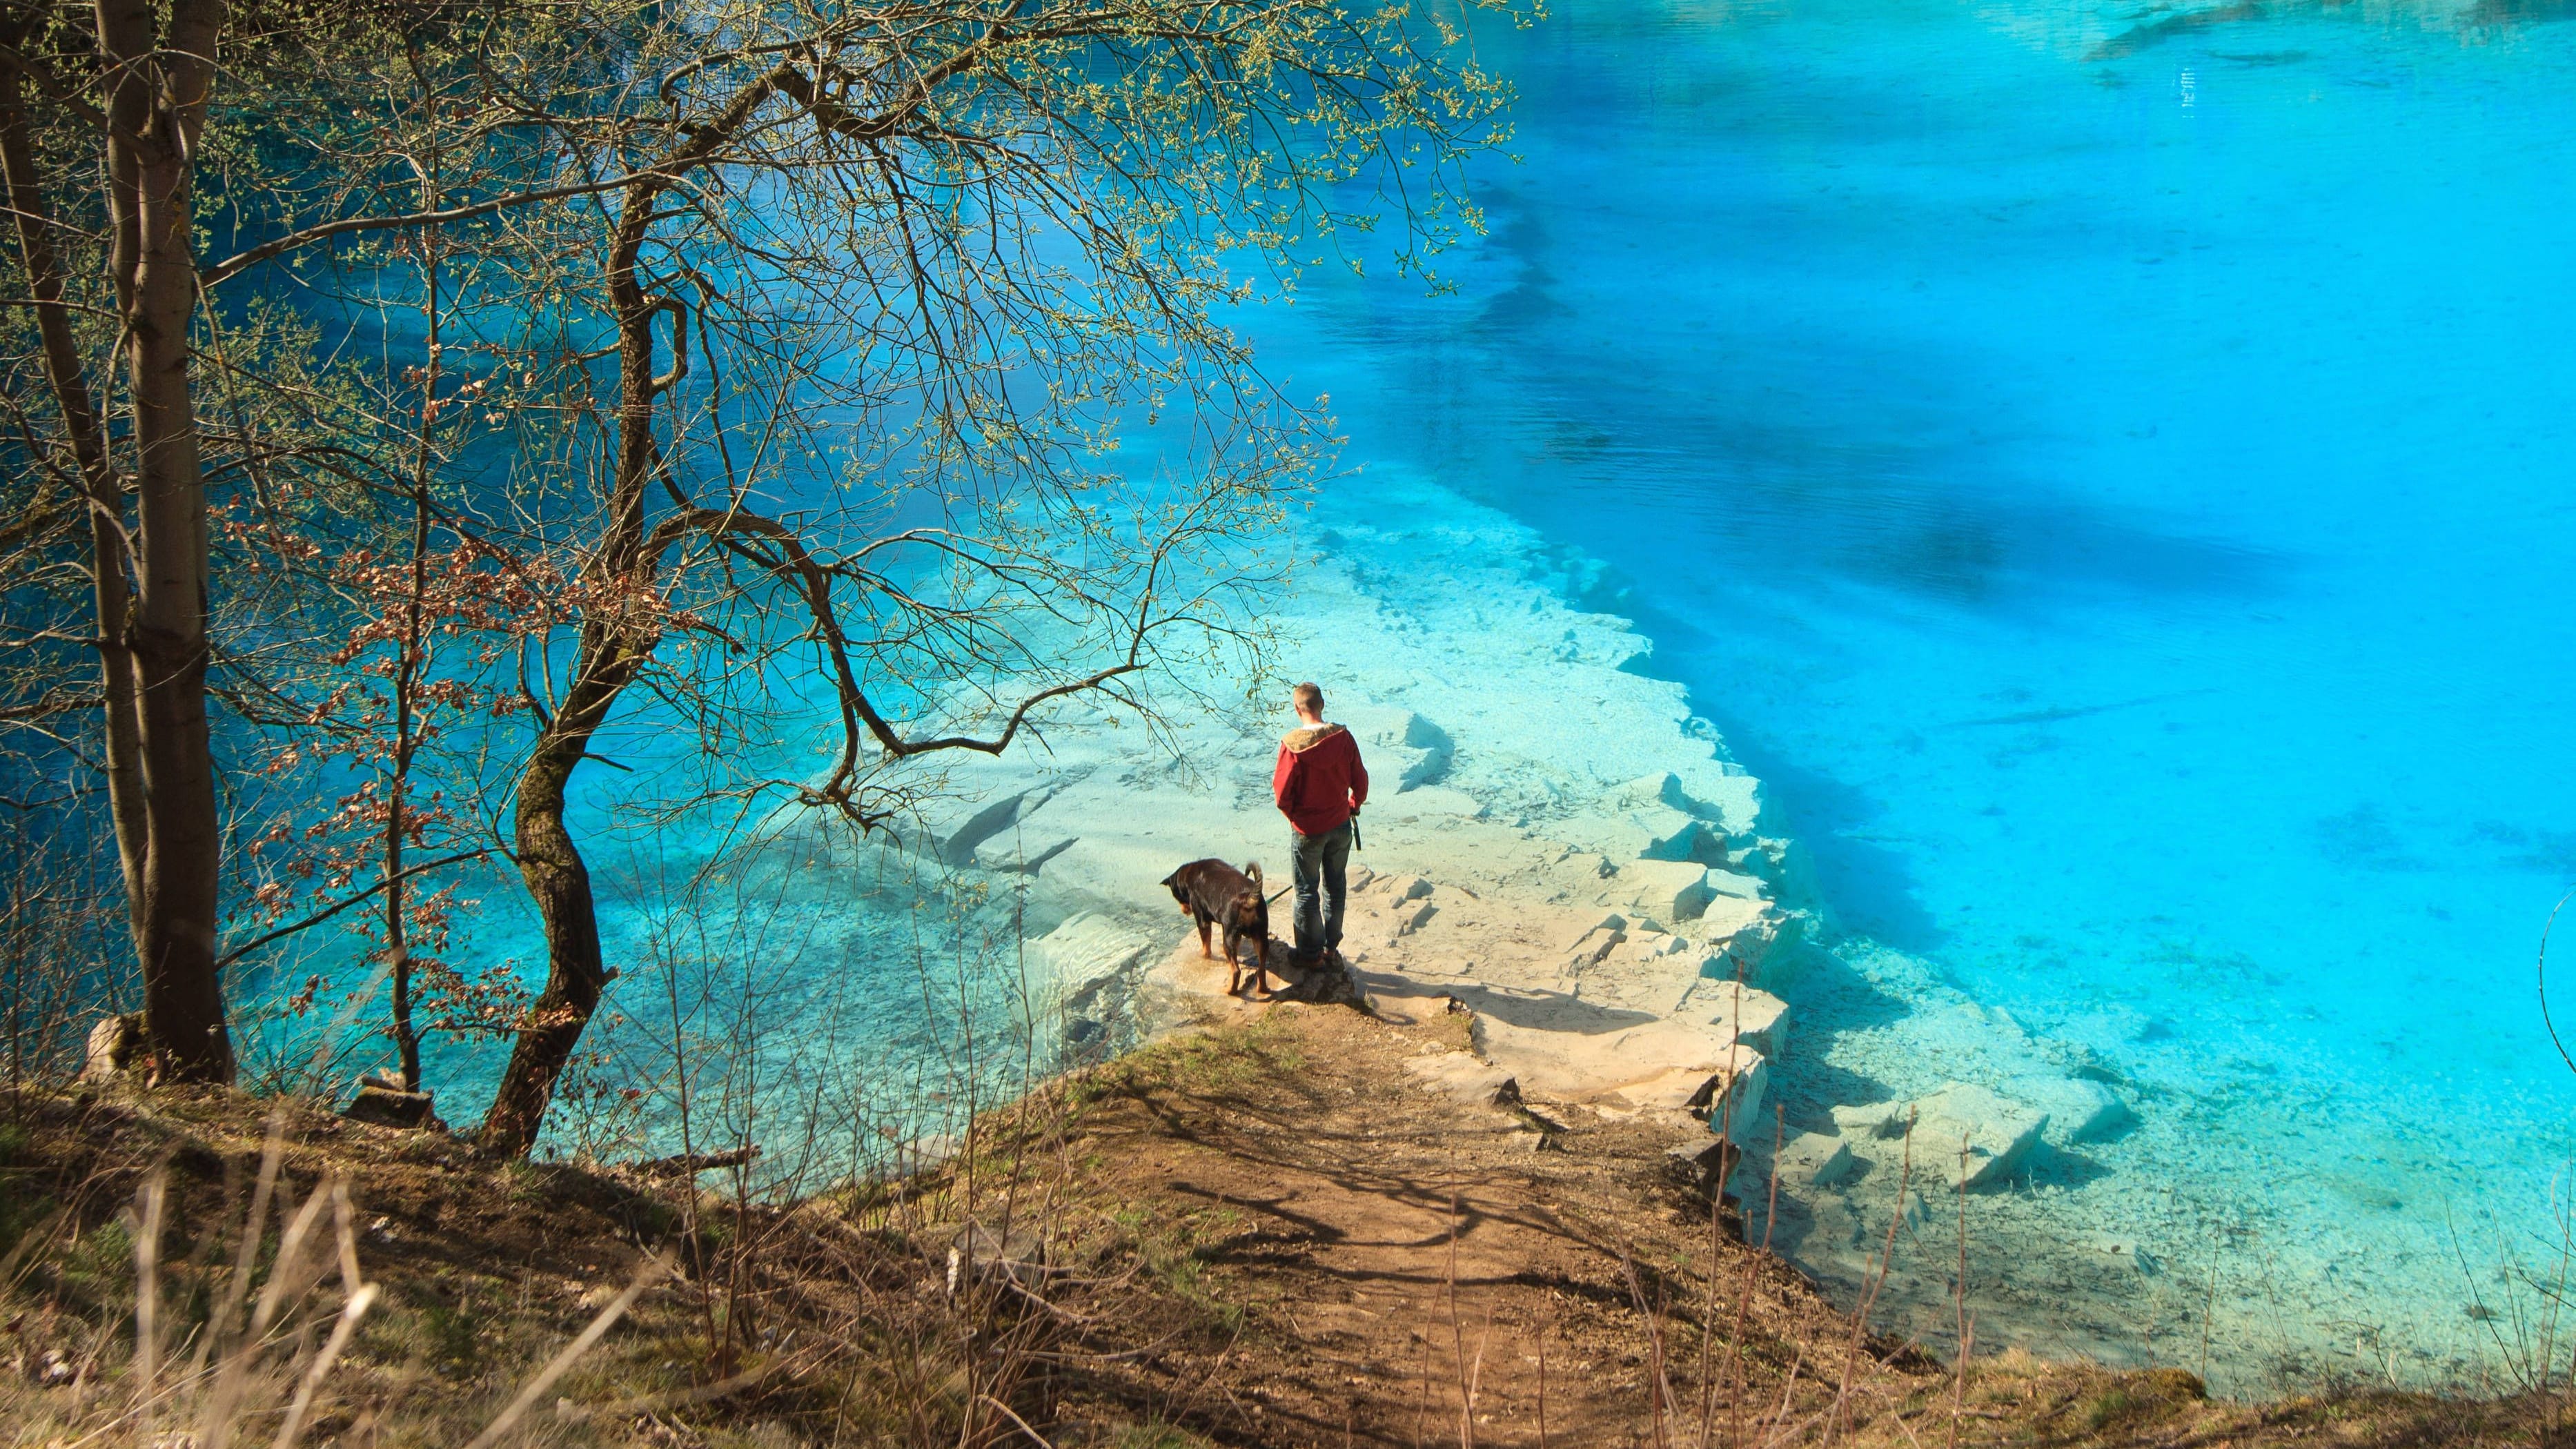 Karibik im Harz: Azurblauer See ist (noch) ein Geheimtipp | Ausflugsziel